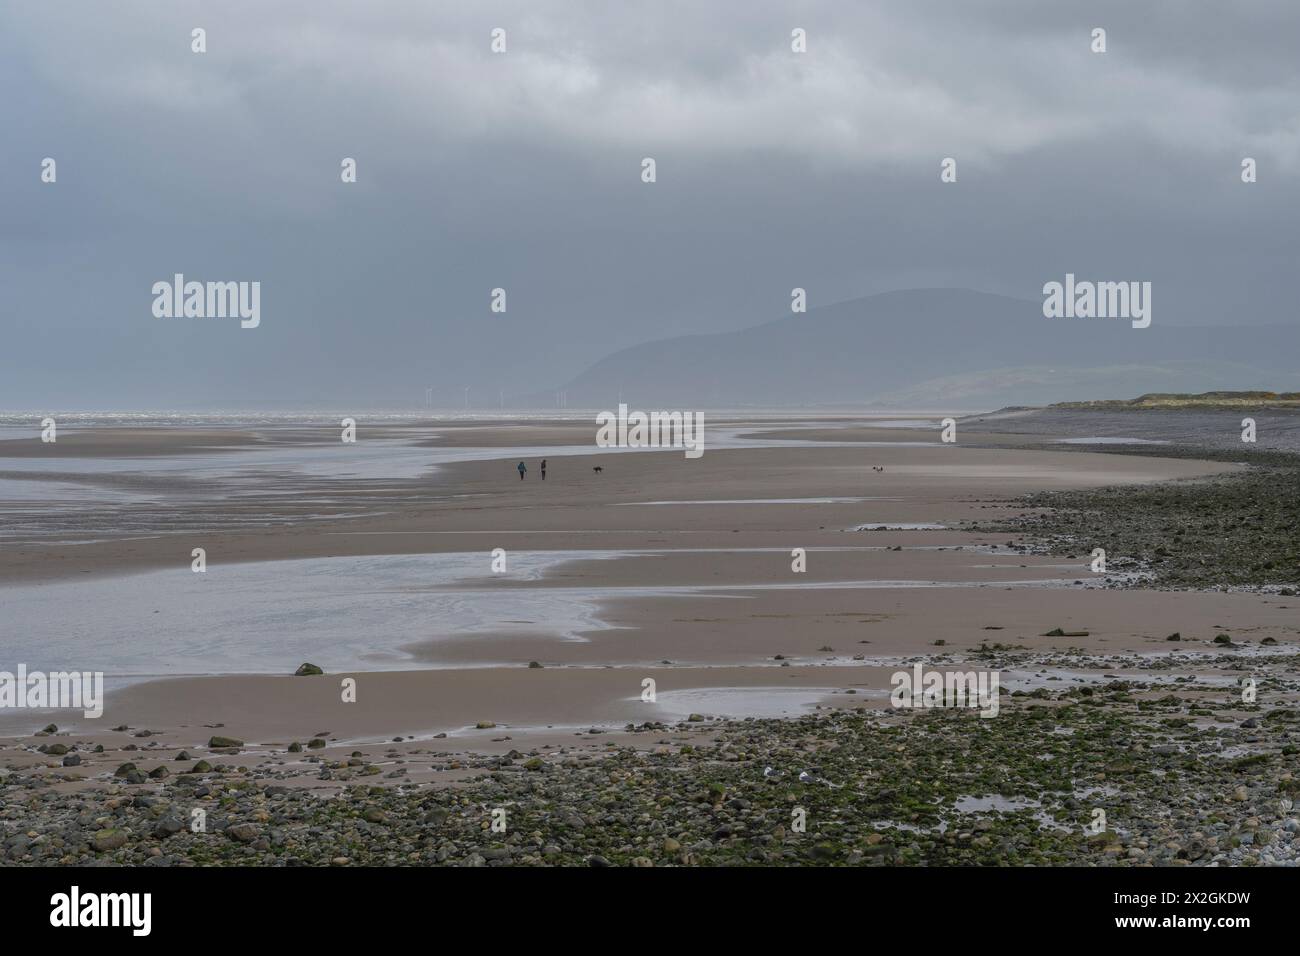 Vaste plage sur la rive ouest, Walney Island, Barrow-in-Furness, Cumbria, sous un ciel orageux gris avec la montagne Black Combe en arrière-plan. Banque D'Images